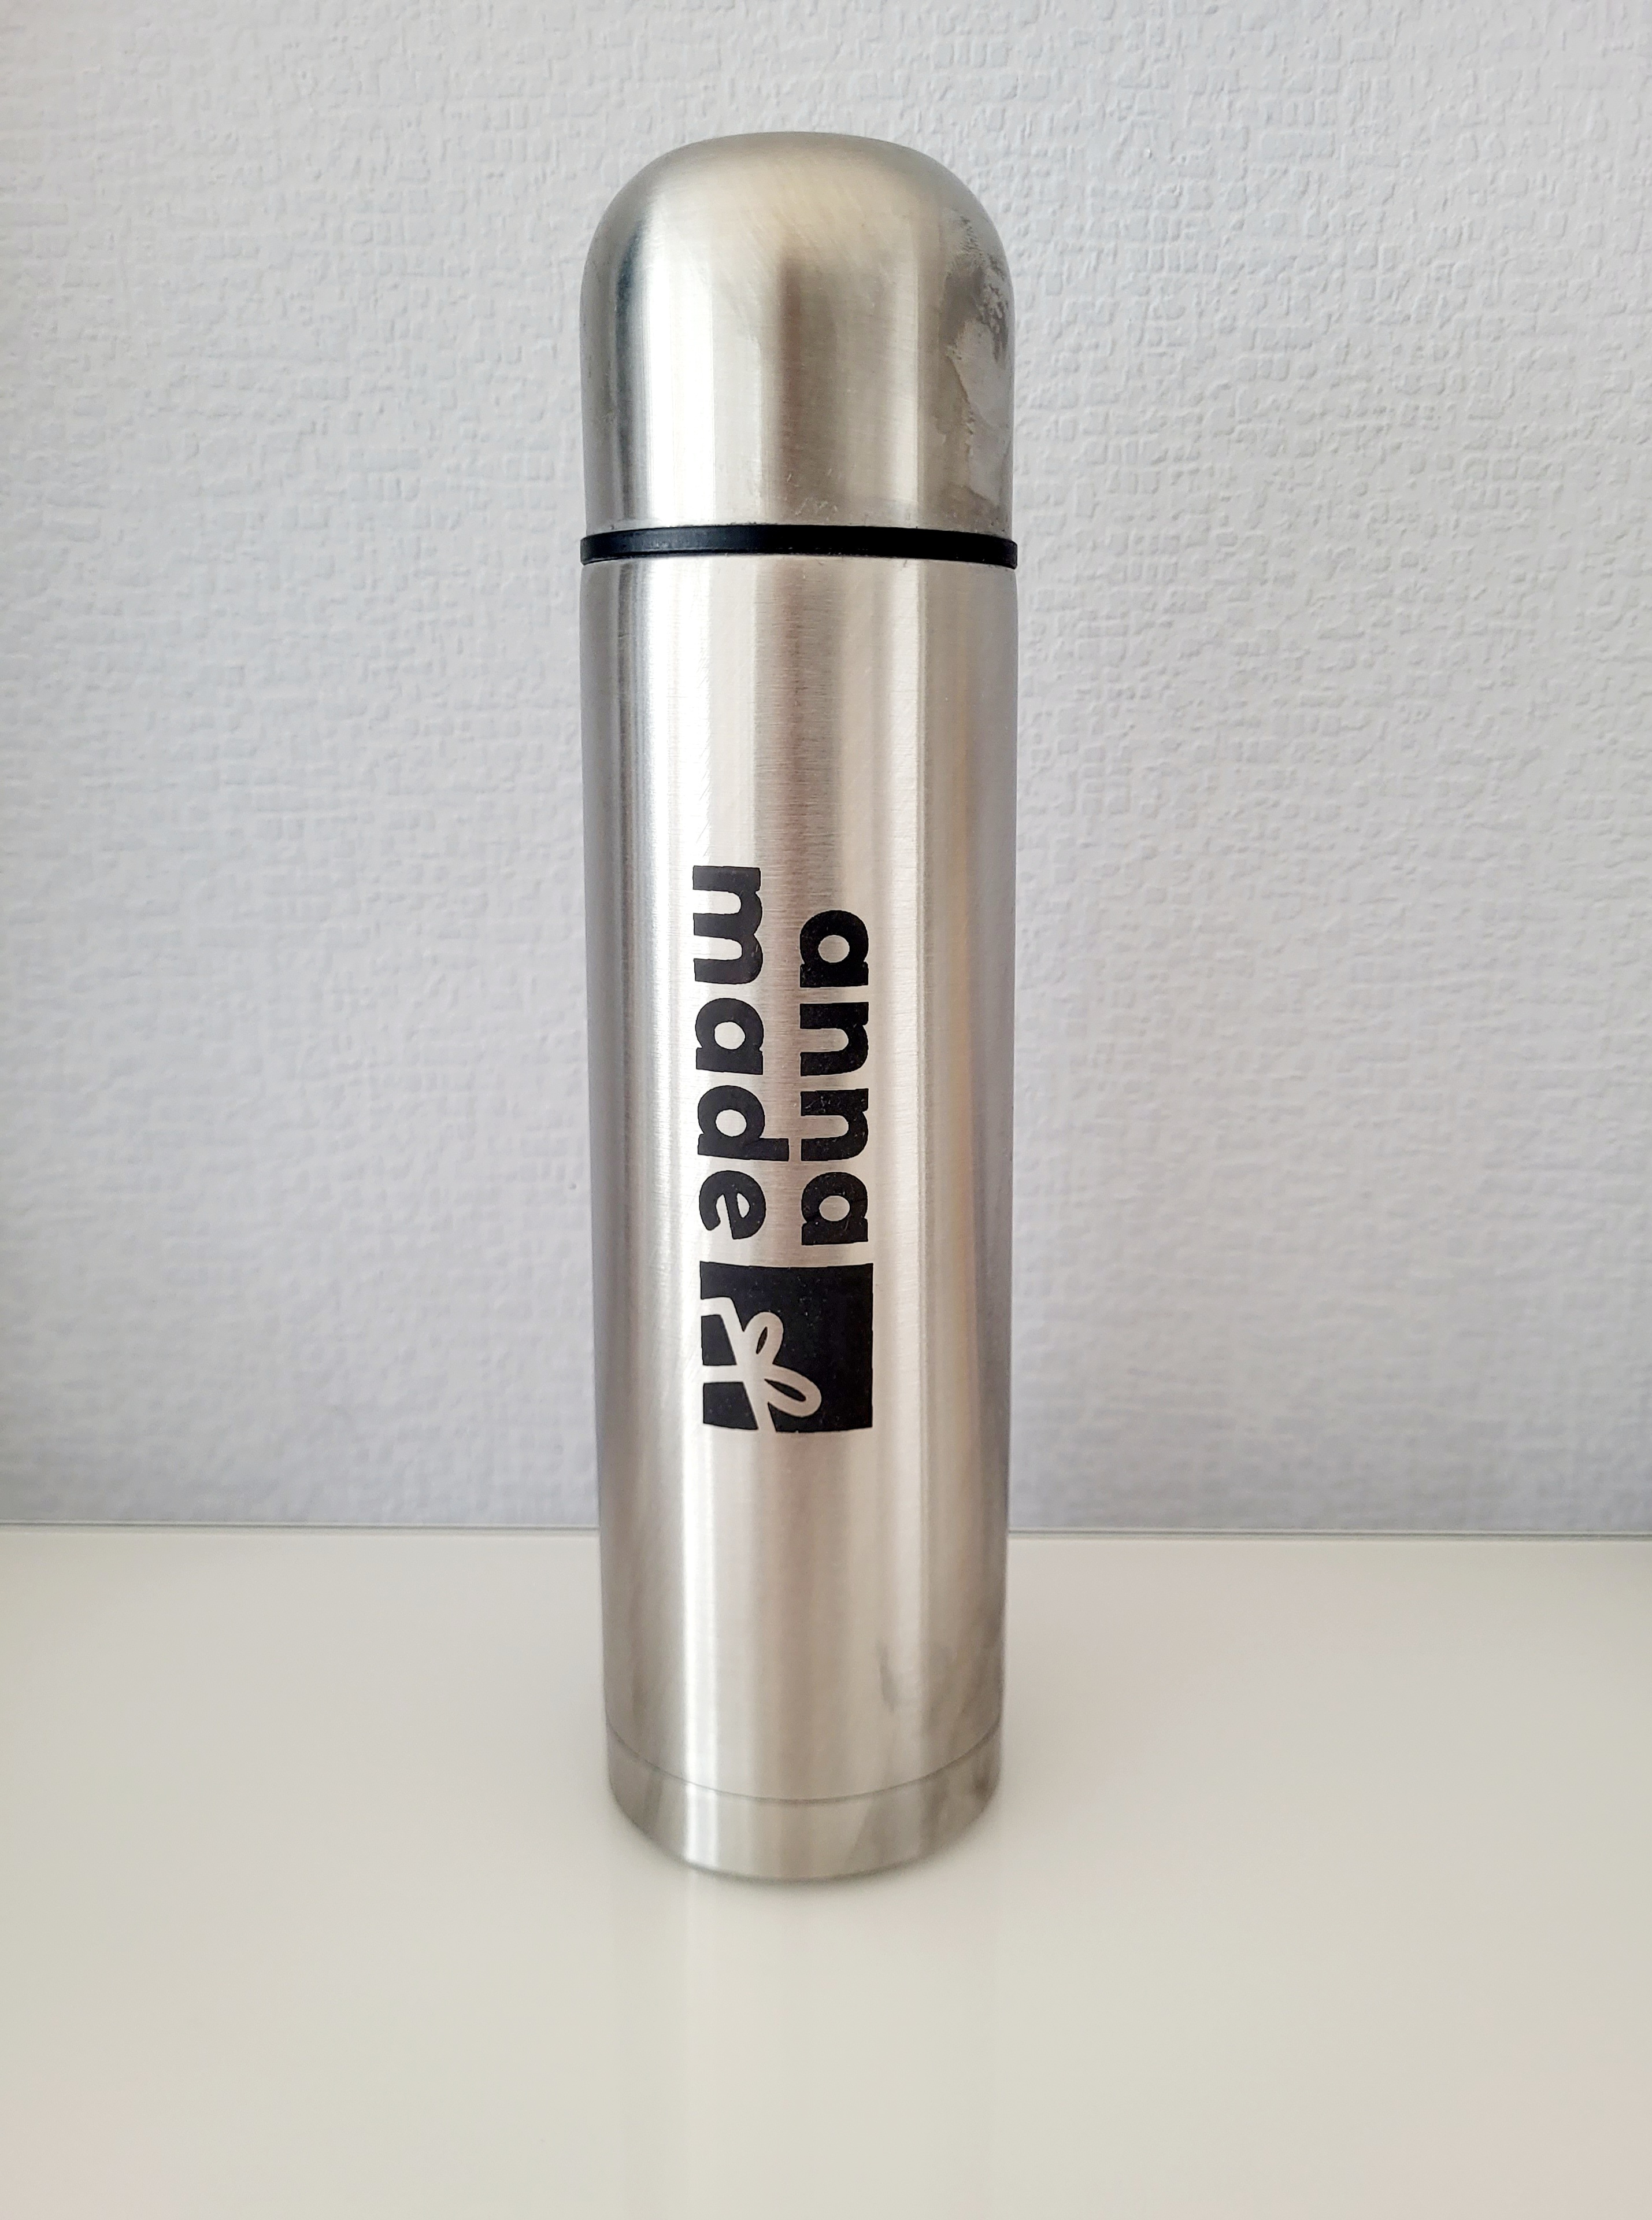 Thermosflasche aus Edelstahl  / Personalisierte Trinkflasche/ individuell gestaltet mit Gravur/ Thermosflasche 400ml 